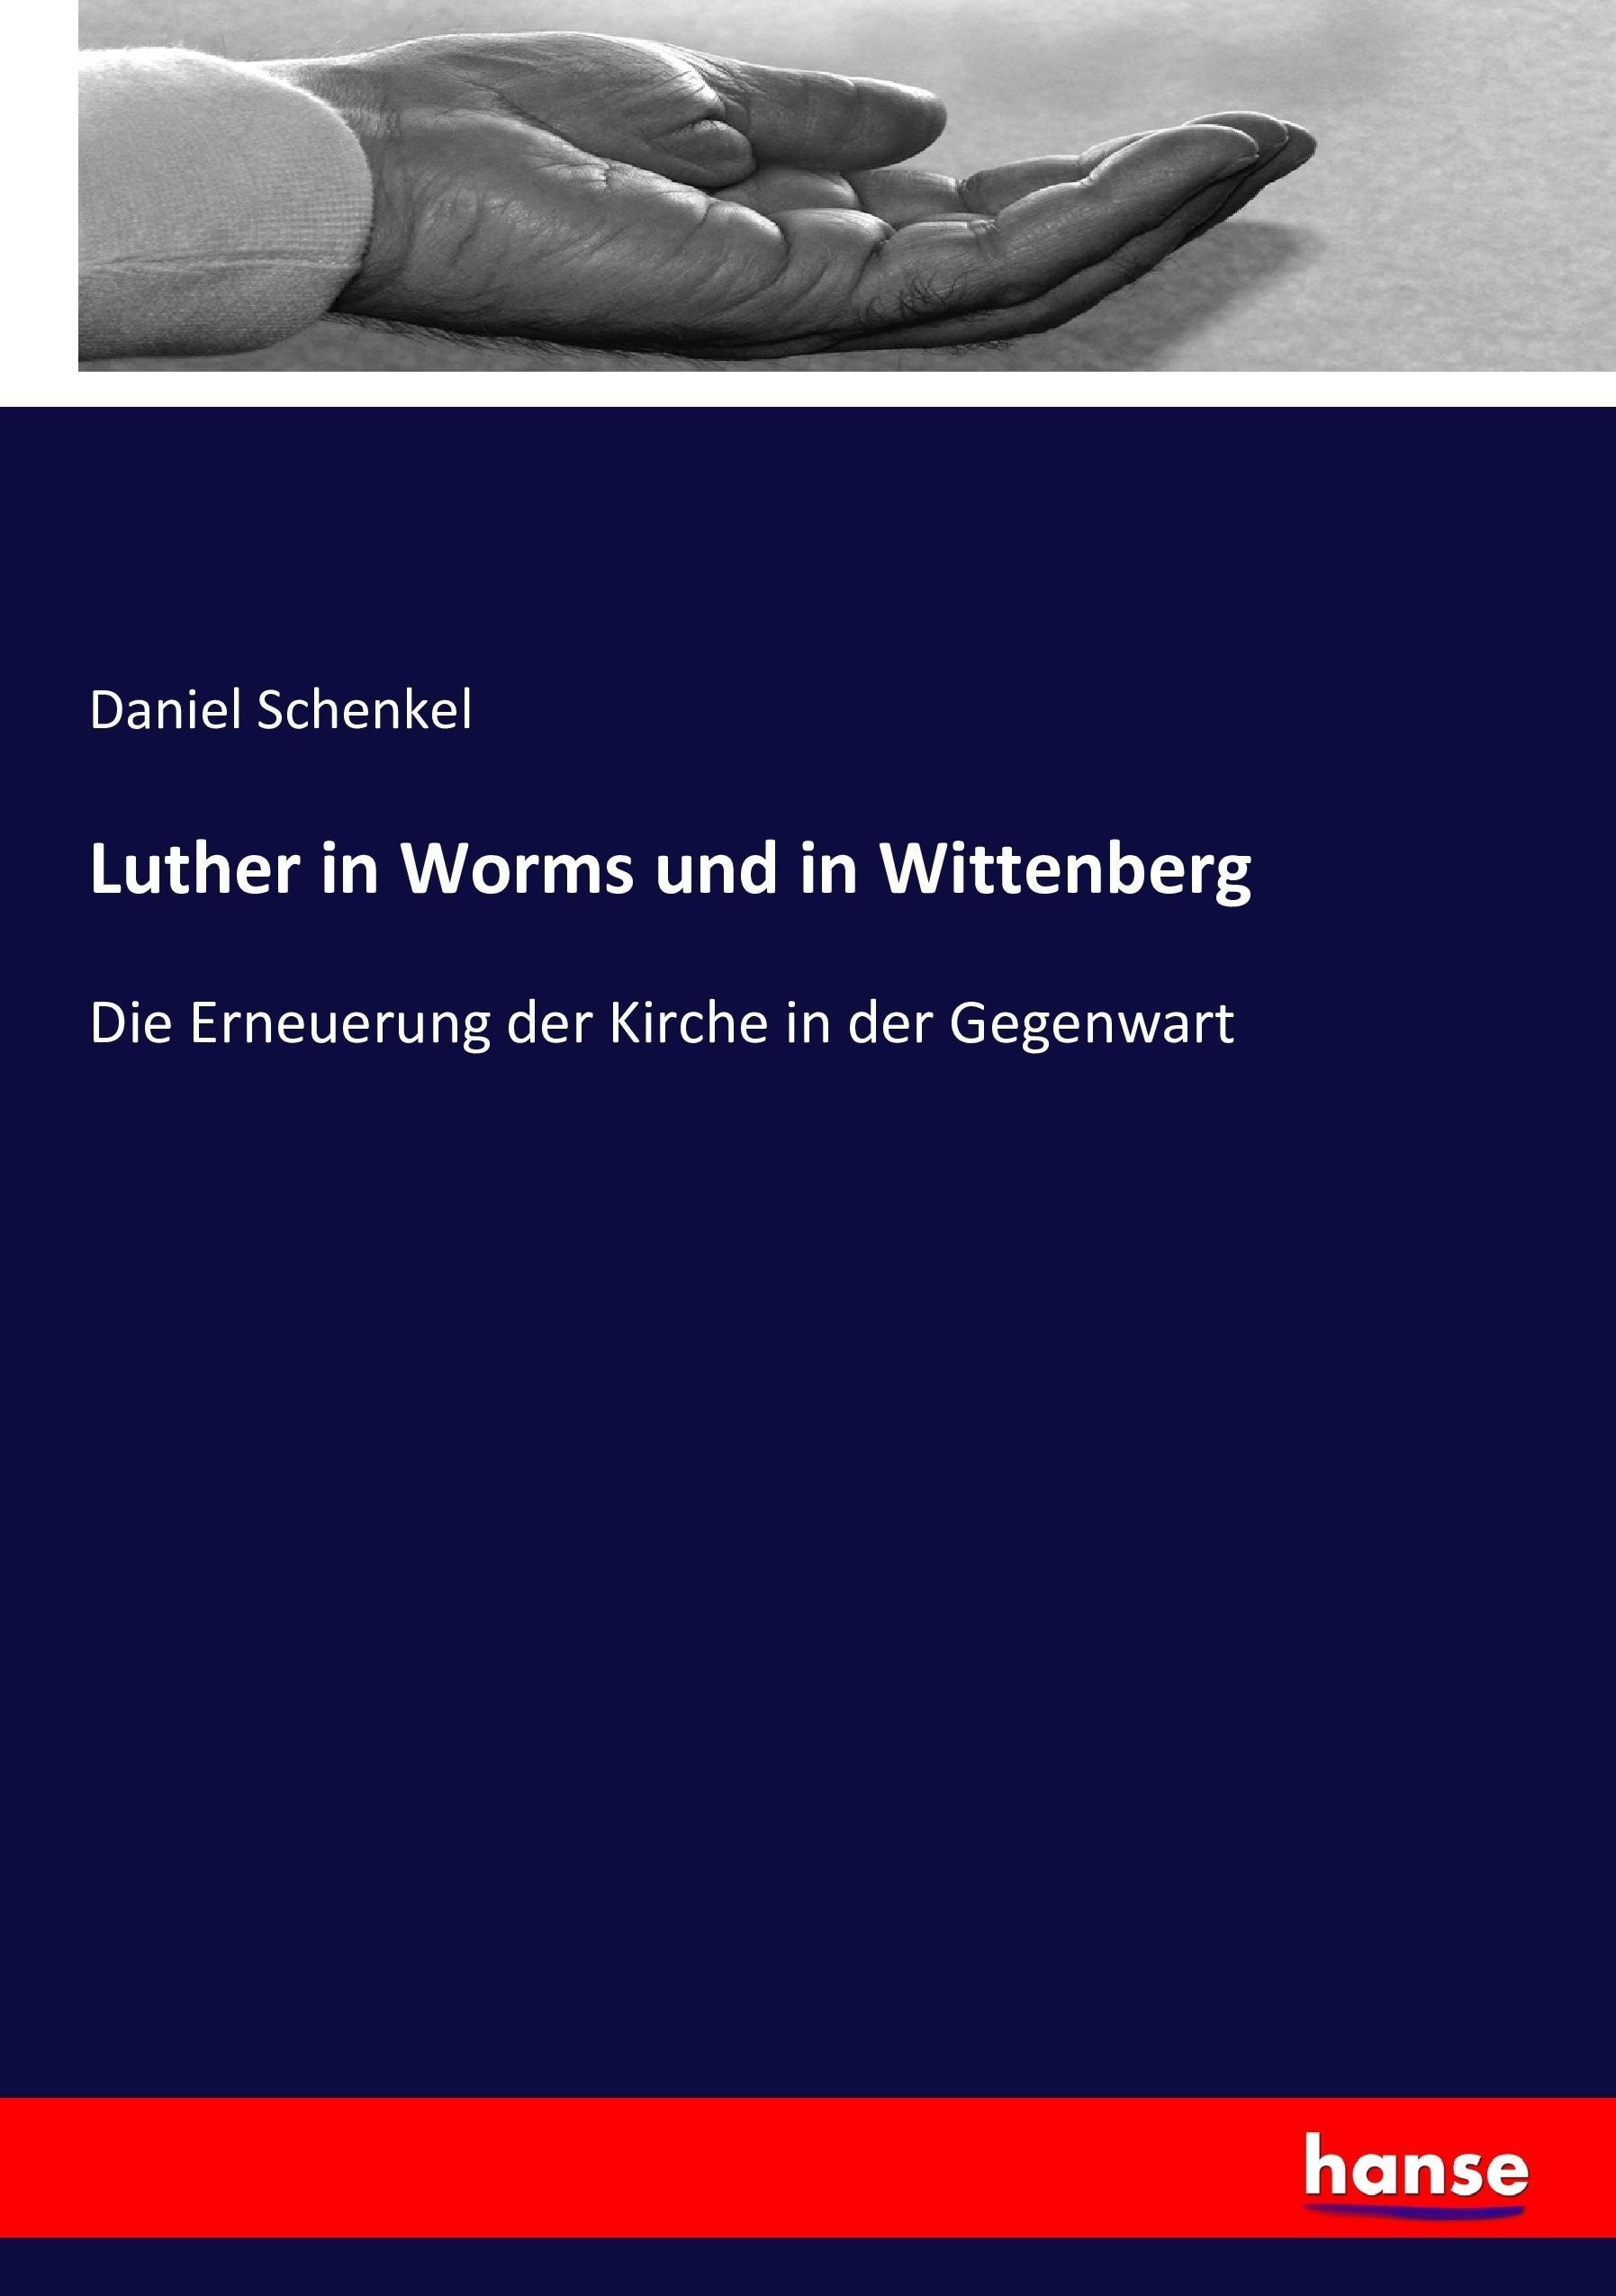 Luther in Worms und in Wittenberg | Die Erneuerung der Kirche in der Gegenwart | Daniel Schenkel | Taschenbuch | Paperback | 212 S. | Deutsch | 2017 | hansebooks | EAN 9783743604735 - Schenkel, Daniel